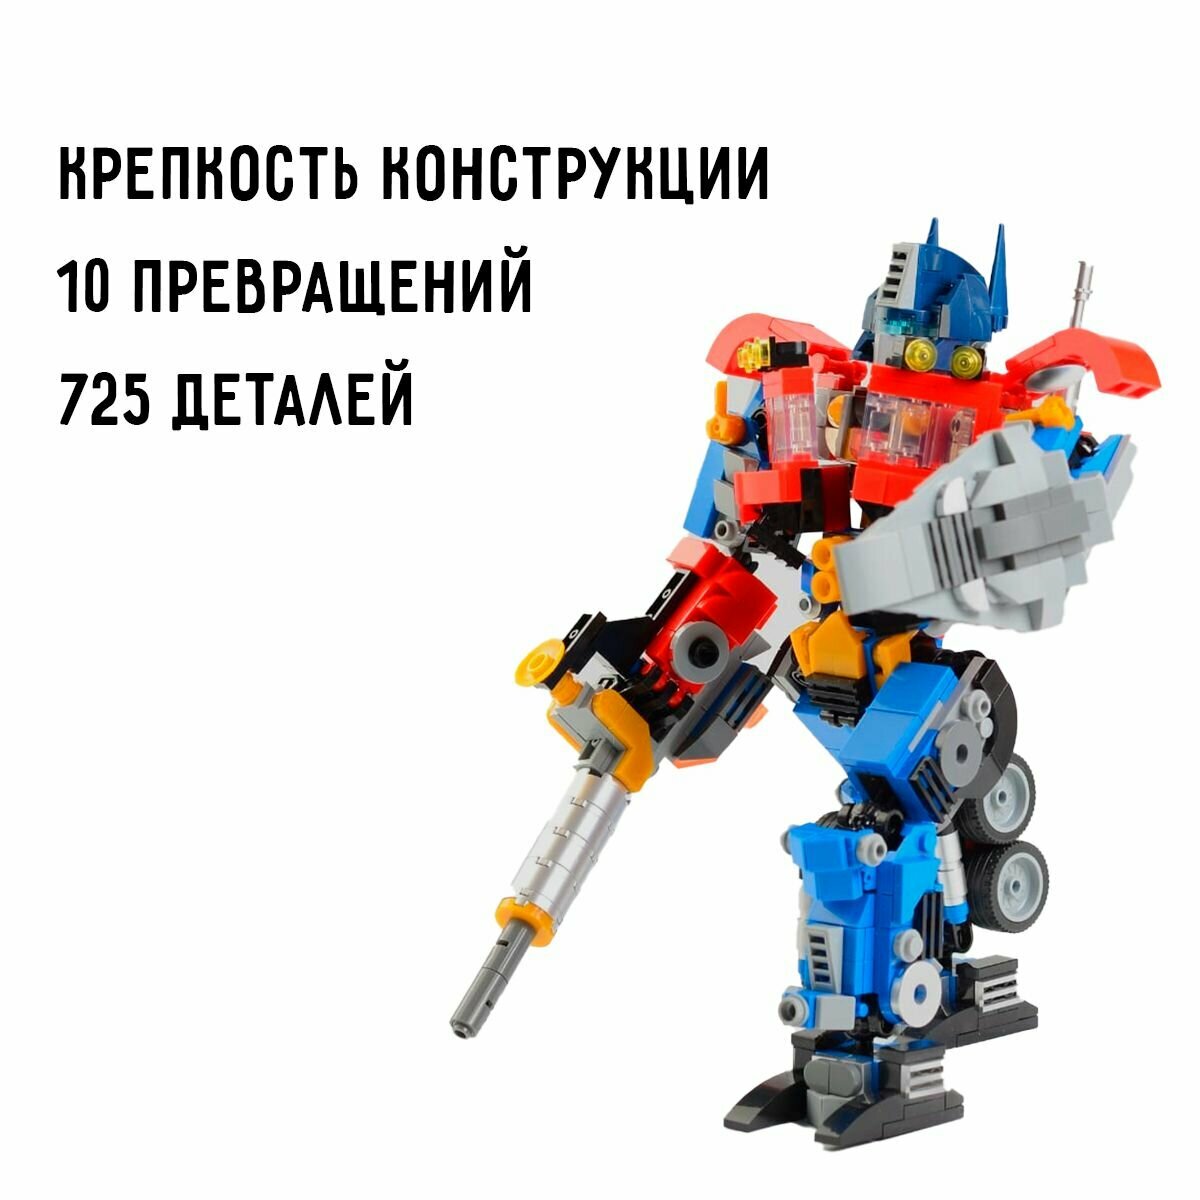 Конструктор трансформер 10 превращений 725 деталей Робот-трансформер Пластиковый конструктор